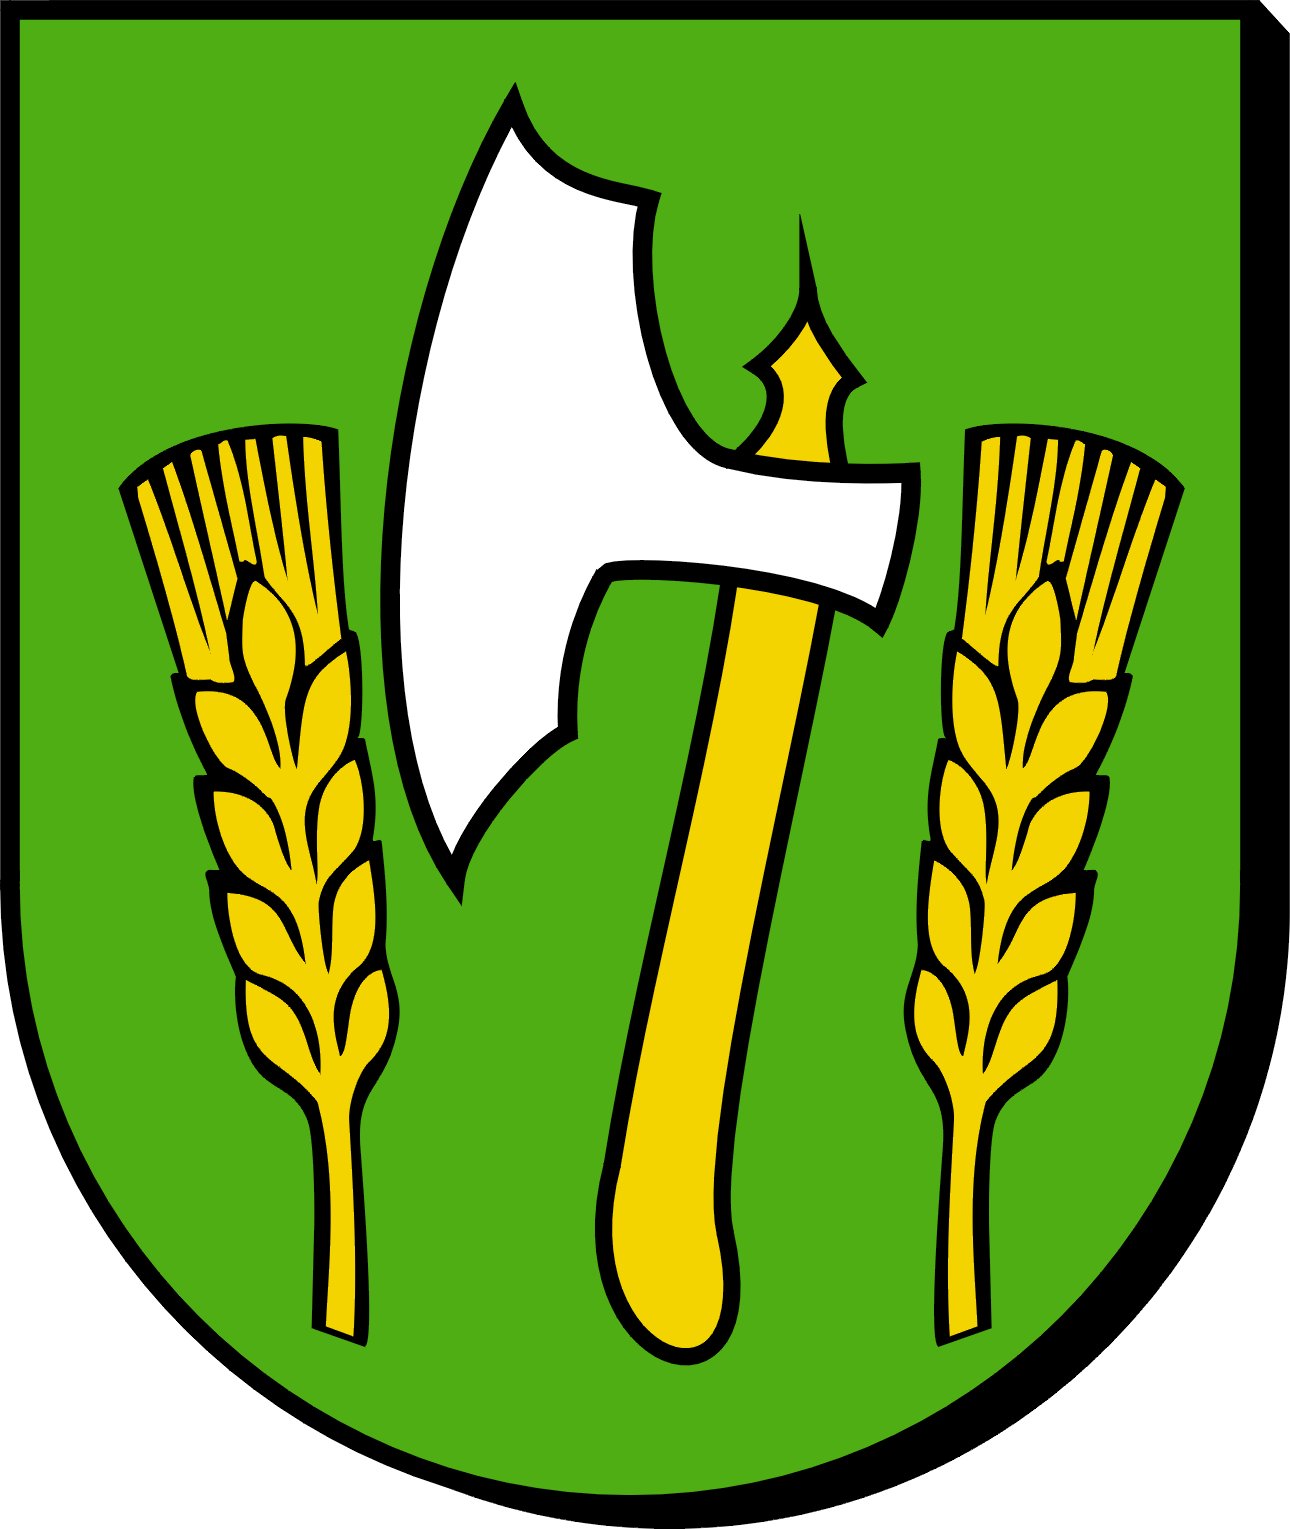 Herb jednopolowy w polu zielonym topór srebrny o złotym toporzysku między dwoma złotymi kłosami pszenicy.